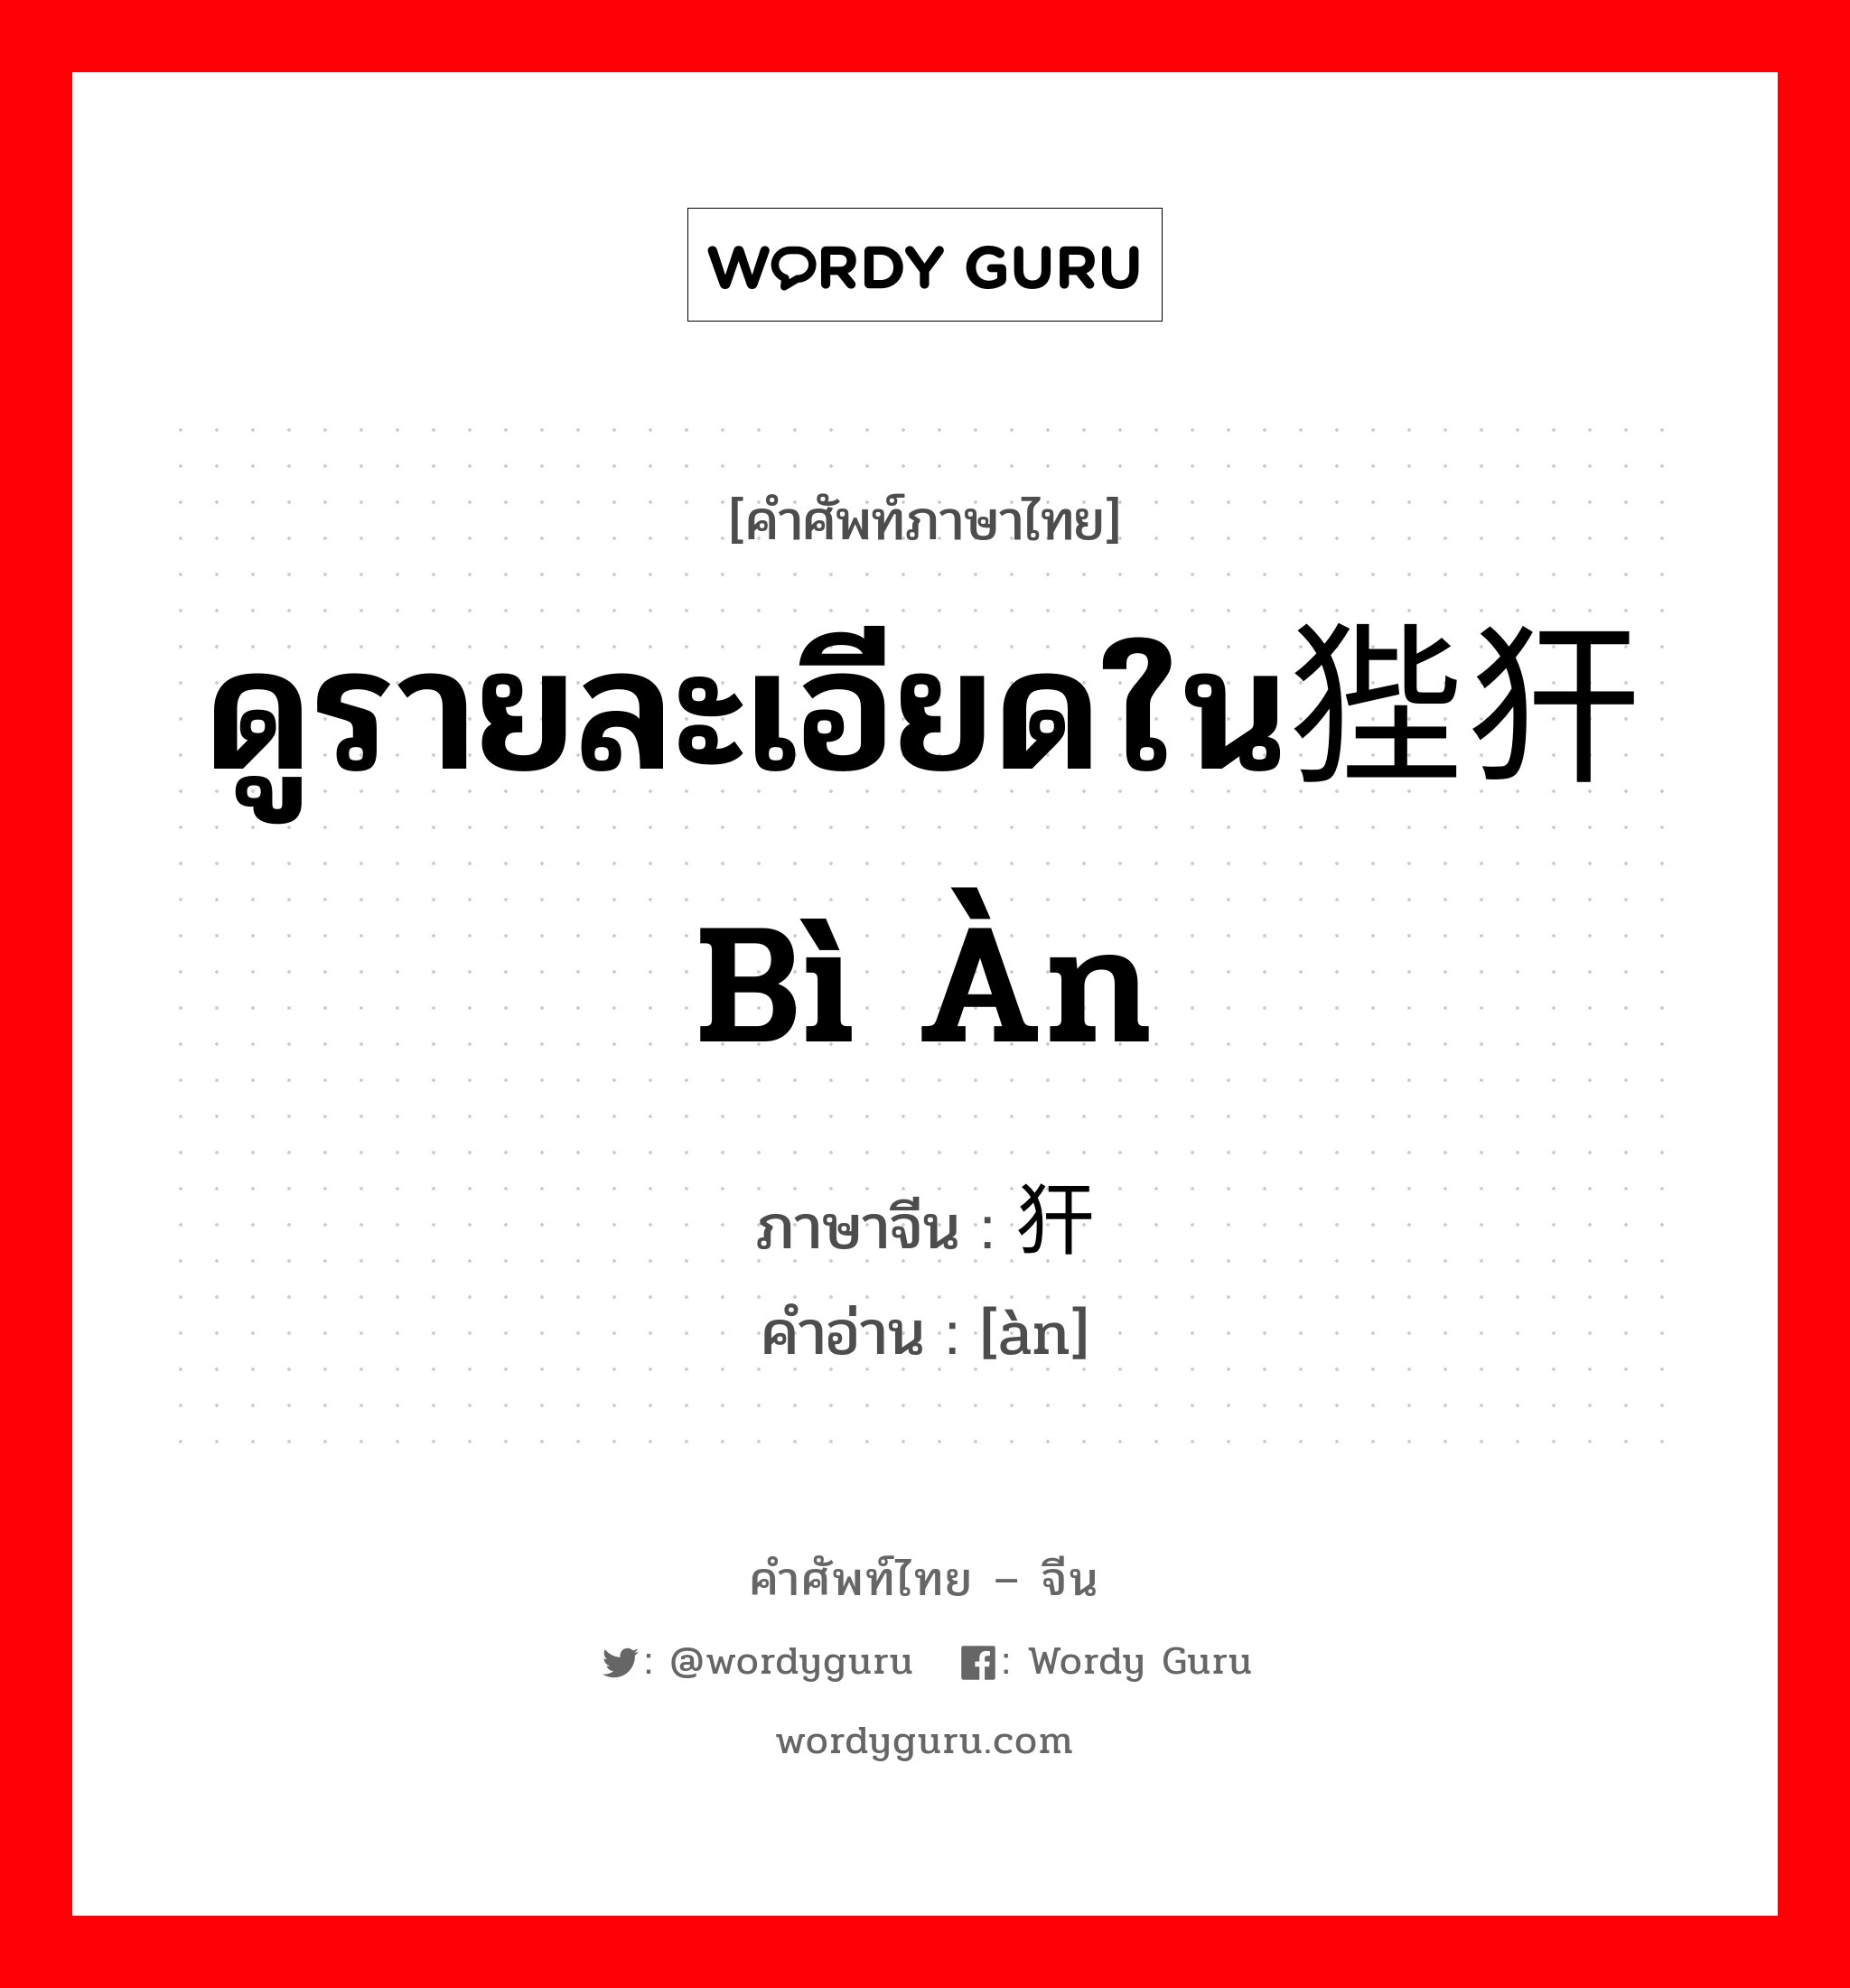 ดูรายละเอียดใน狴犴 bì àn ภาษาจีนคืออะไร, คำศัพท์ภาษาไทย - จีน ดูรายละเอียดใน狴犴 bì àn ภาษาจีน 犴 คำอ่าน [àn]